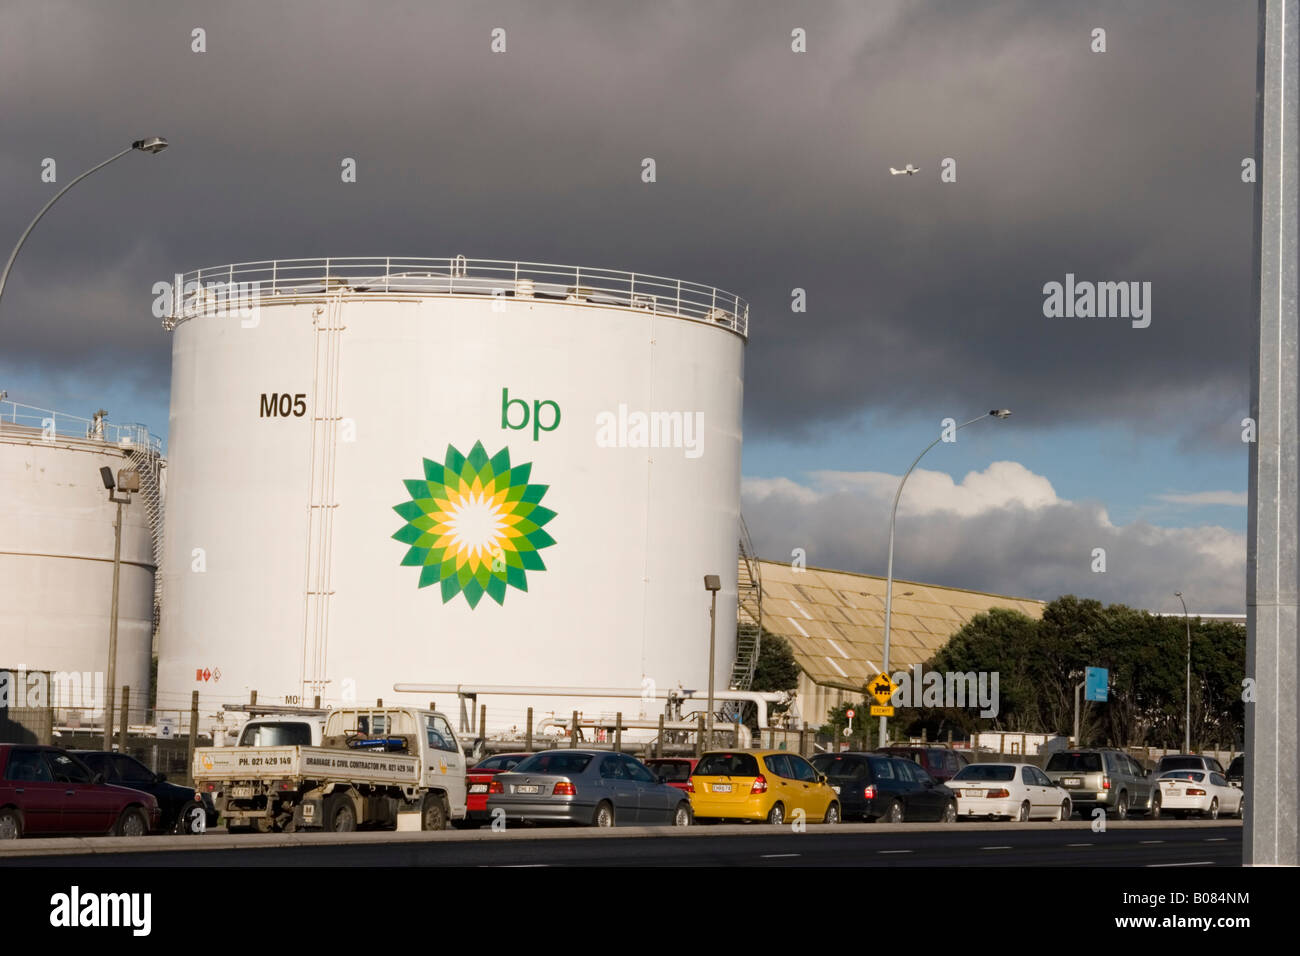 Stau mit BP-Logo im Hintergrund Stockfoto